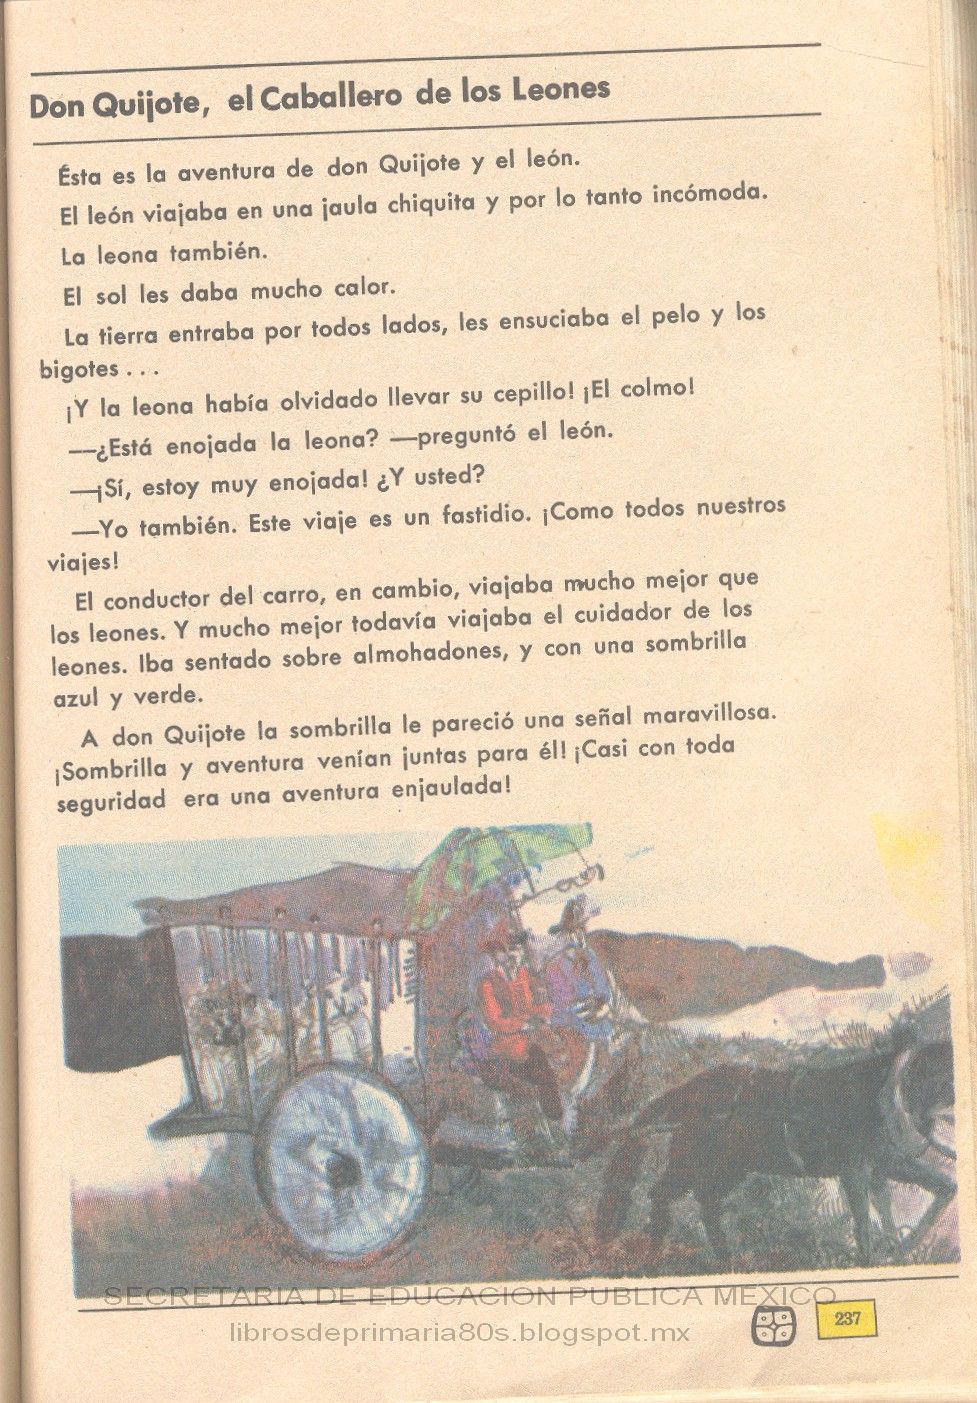 Libros de Primaria de los 80's: Don Quijote, el Caballero de los Leones -  Español 4to grado